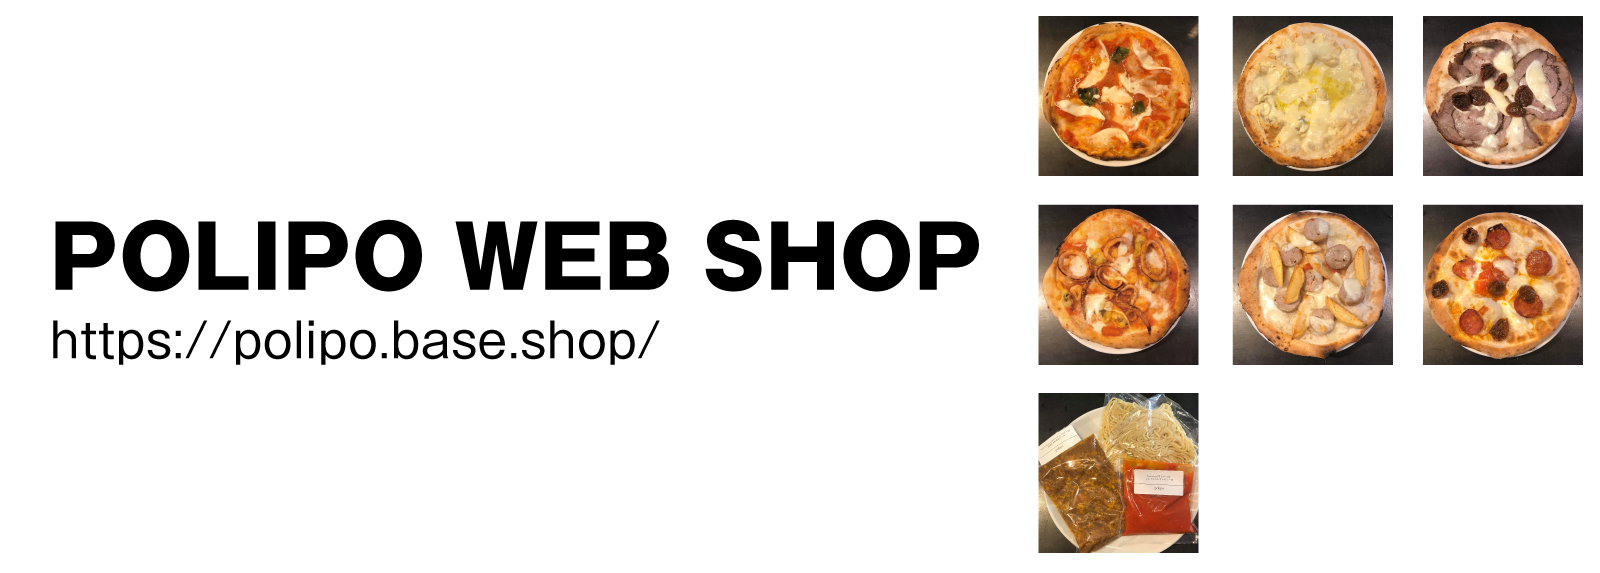 polipo web shop